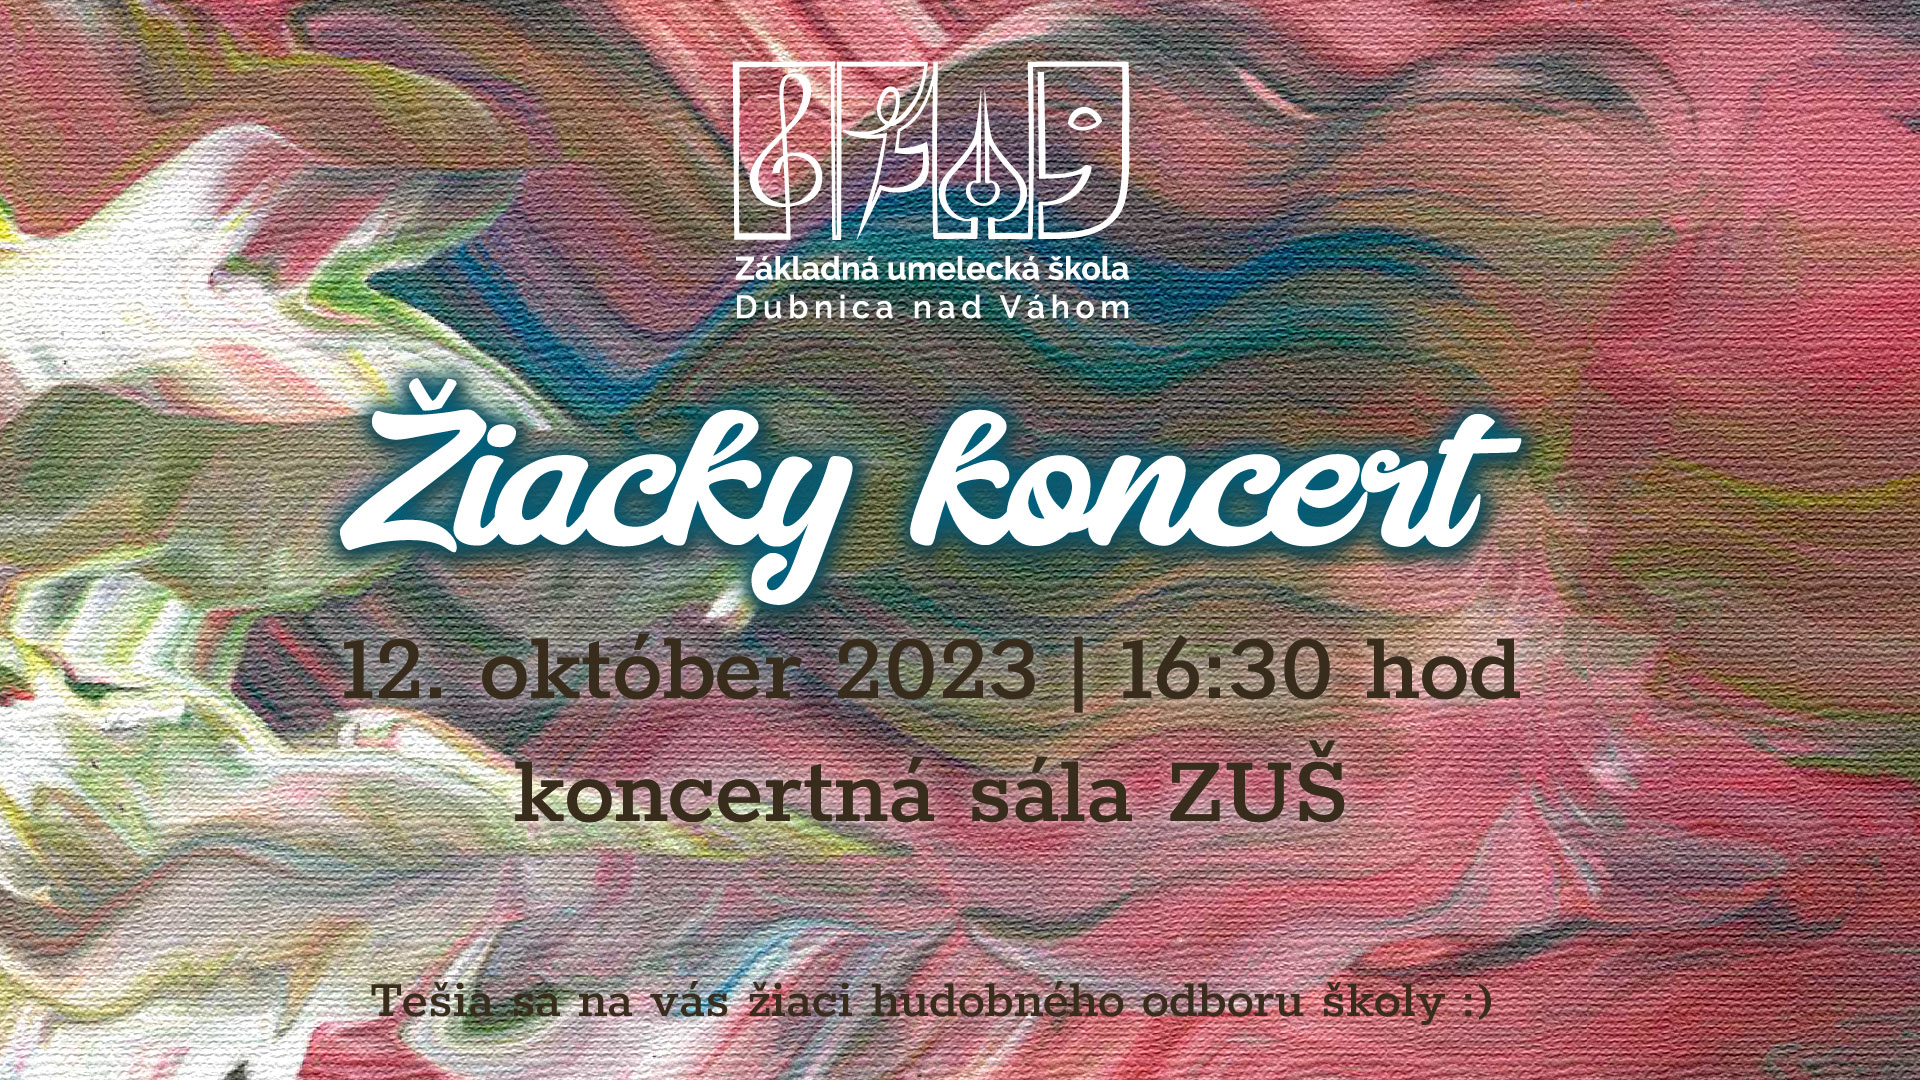 verejný žiacky koncert v októbri 2023 ZUŠ DUbnica nad Váhom